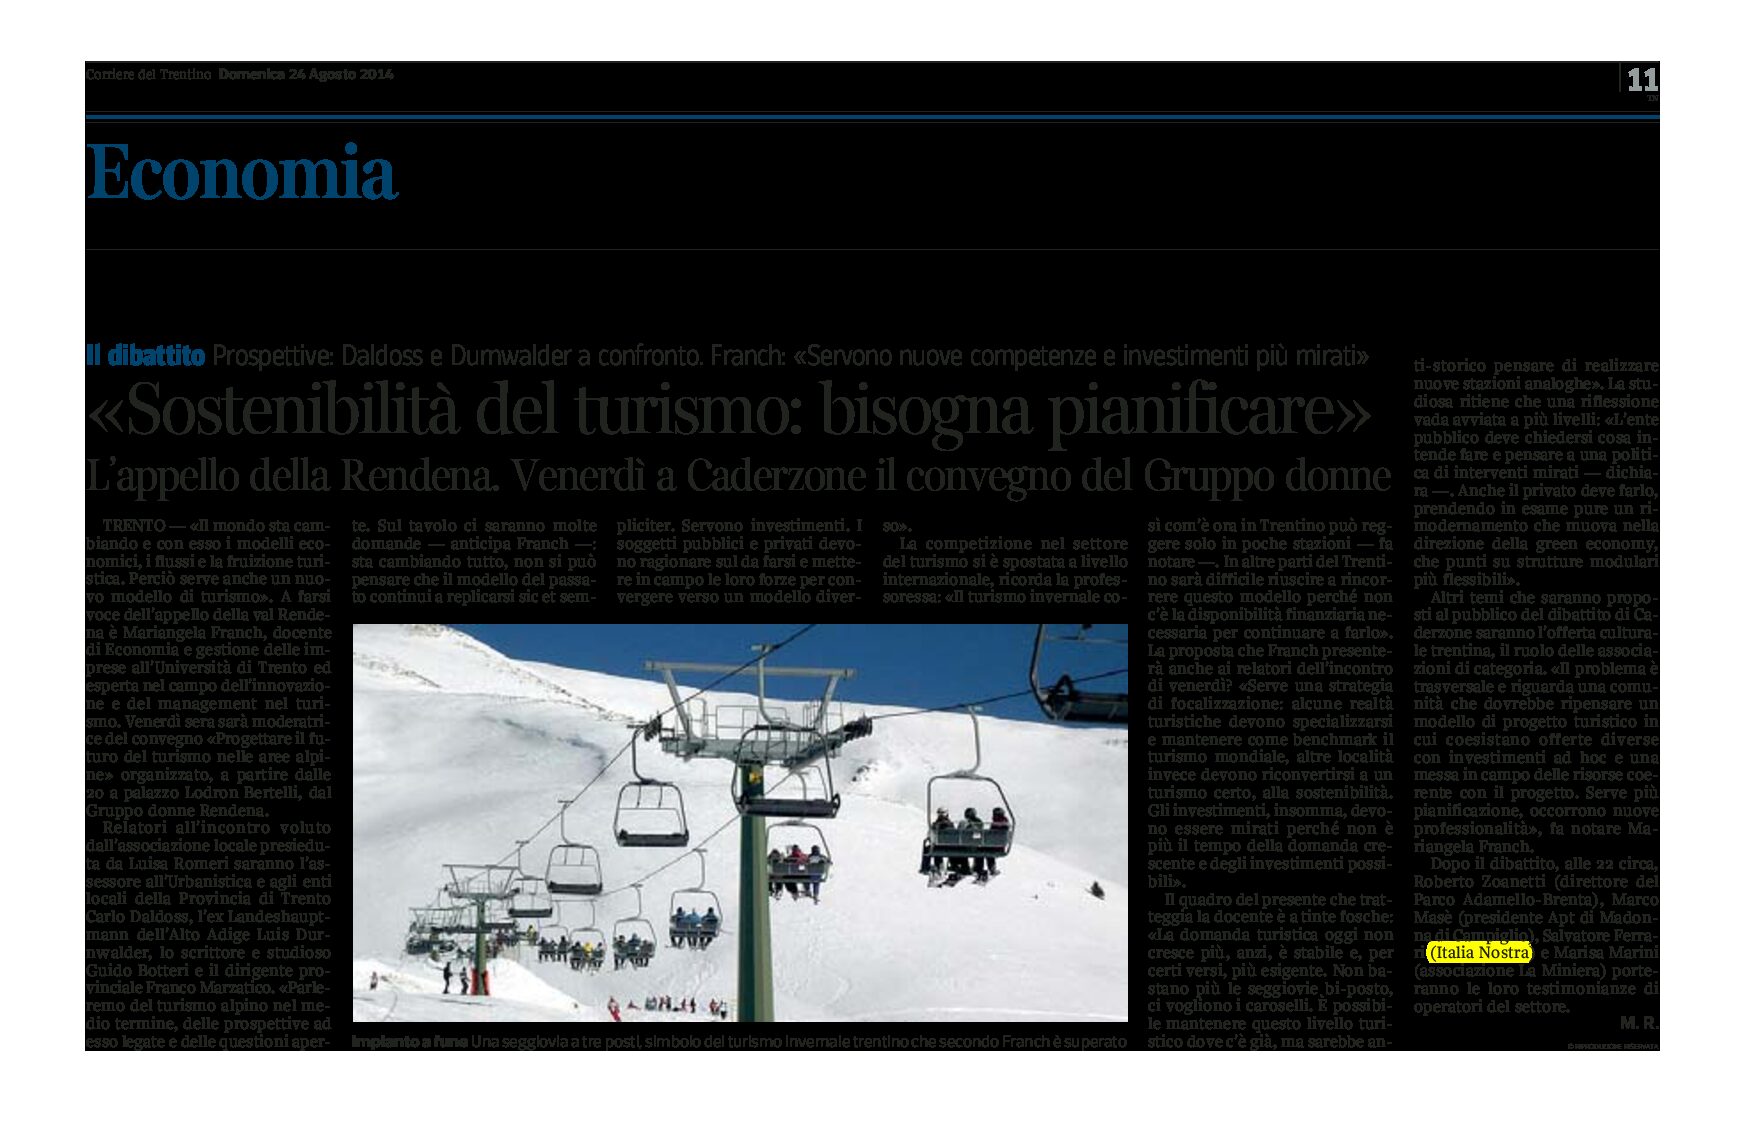 Caderzone: “Progettare il futuro del turismo nelle aree alpine” convegno del Gruppo donne Rendena